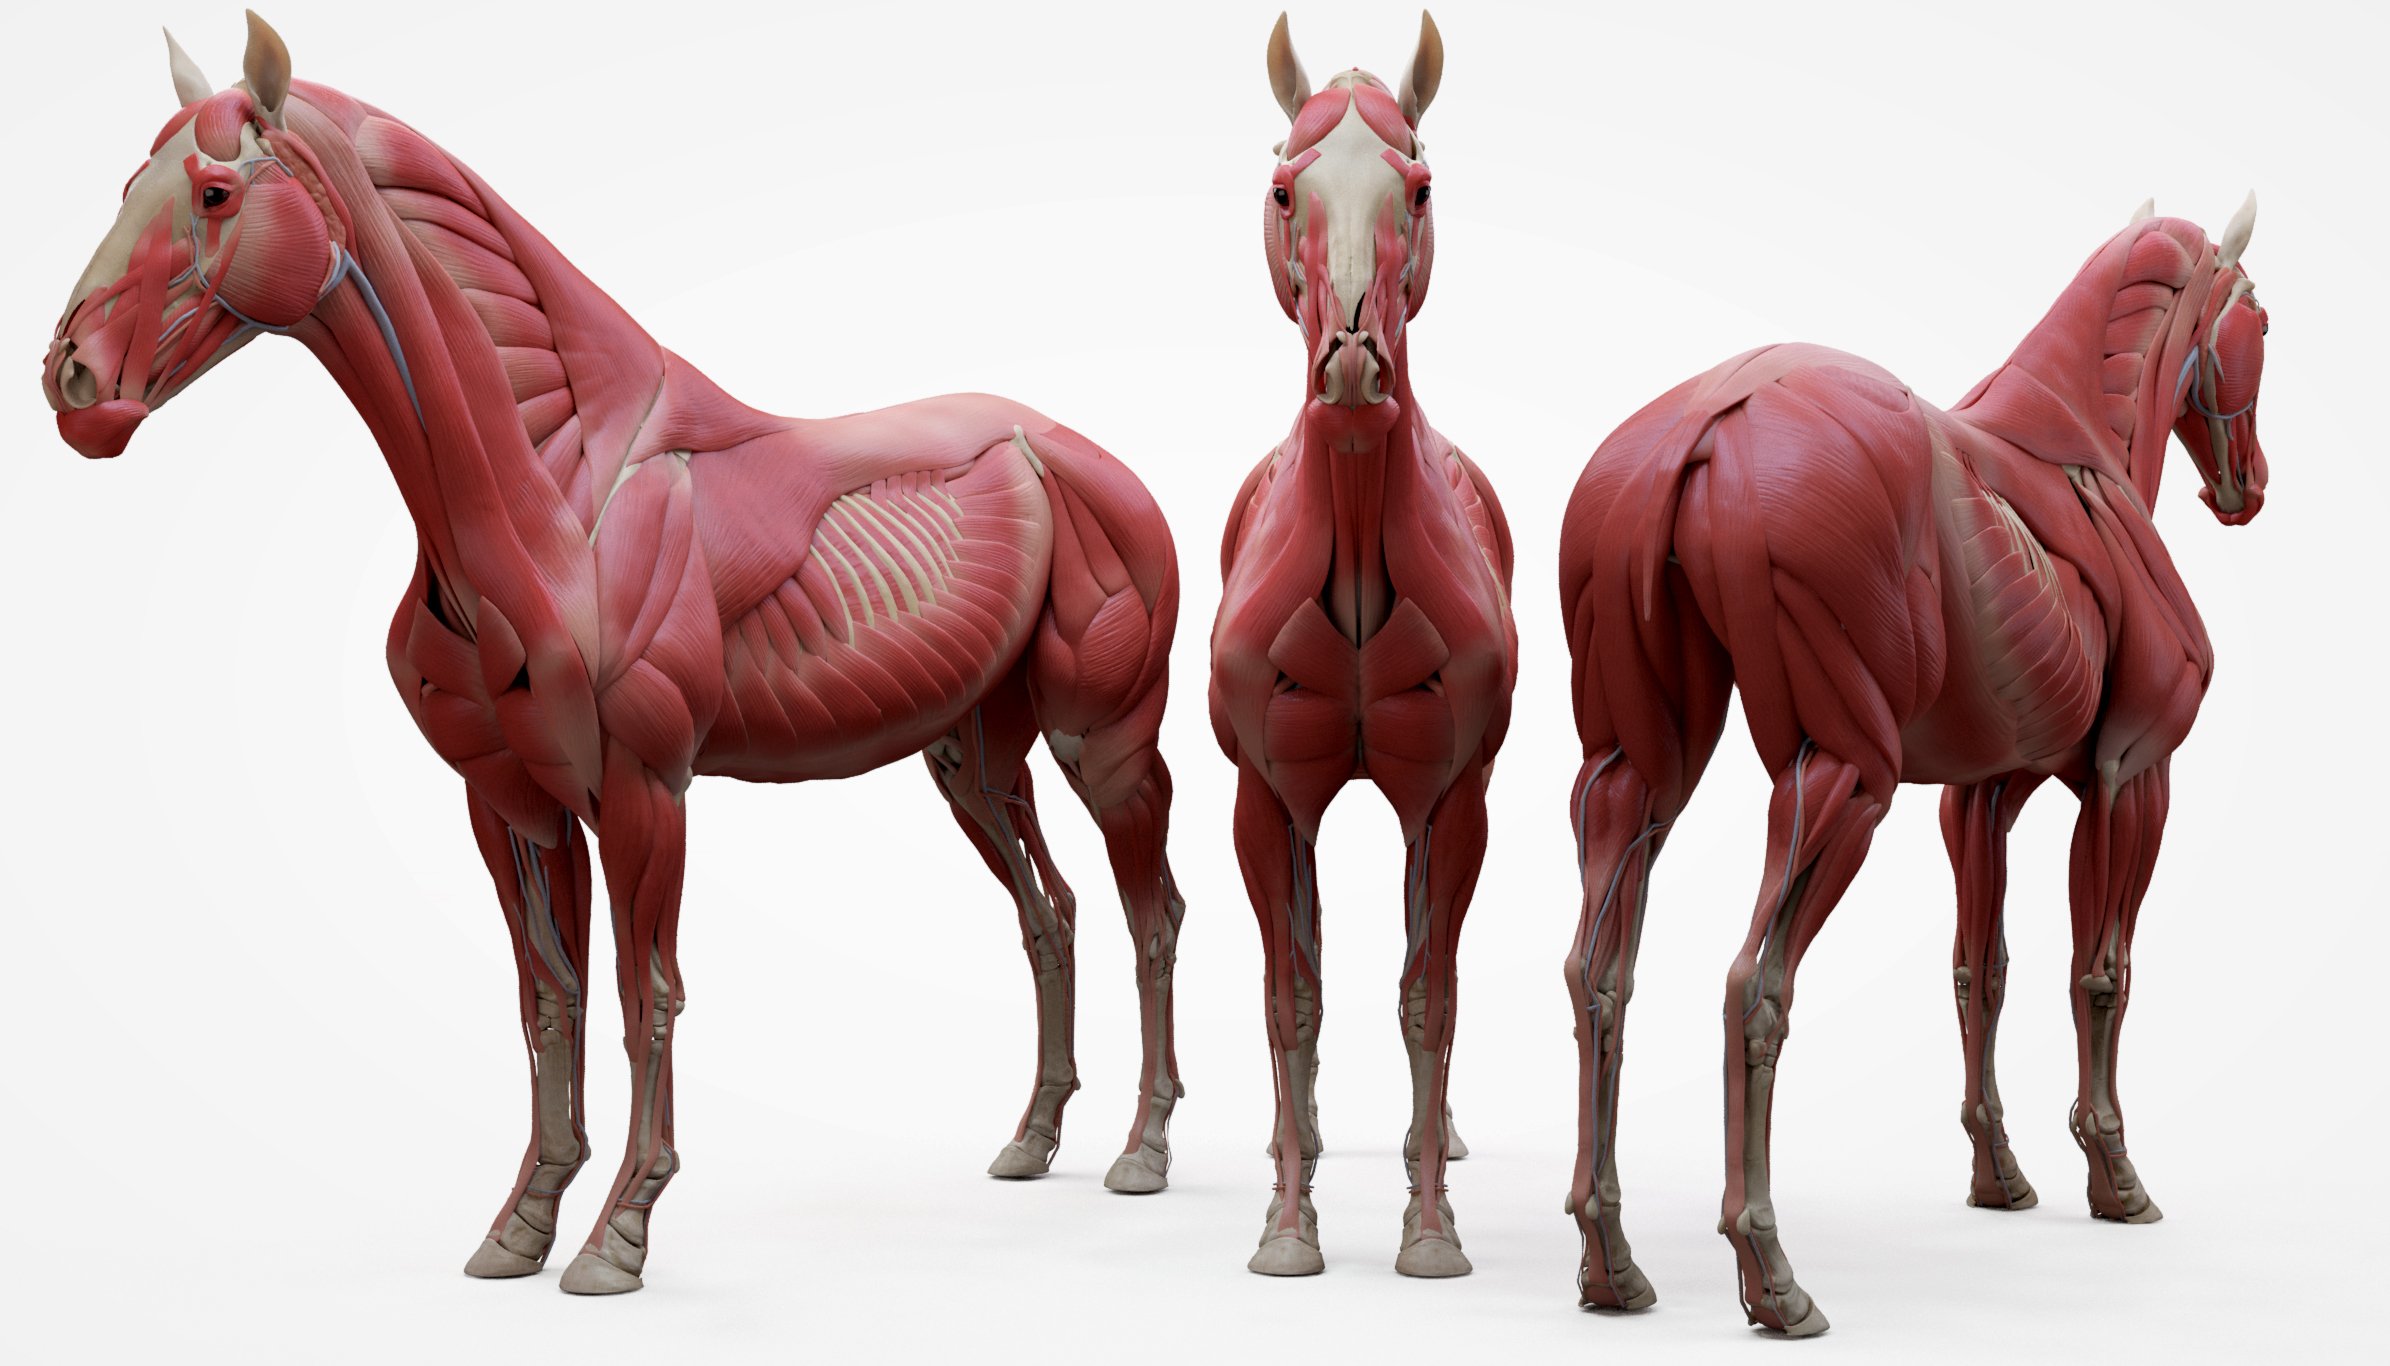 مدل سه بعدی اسب